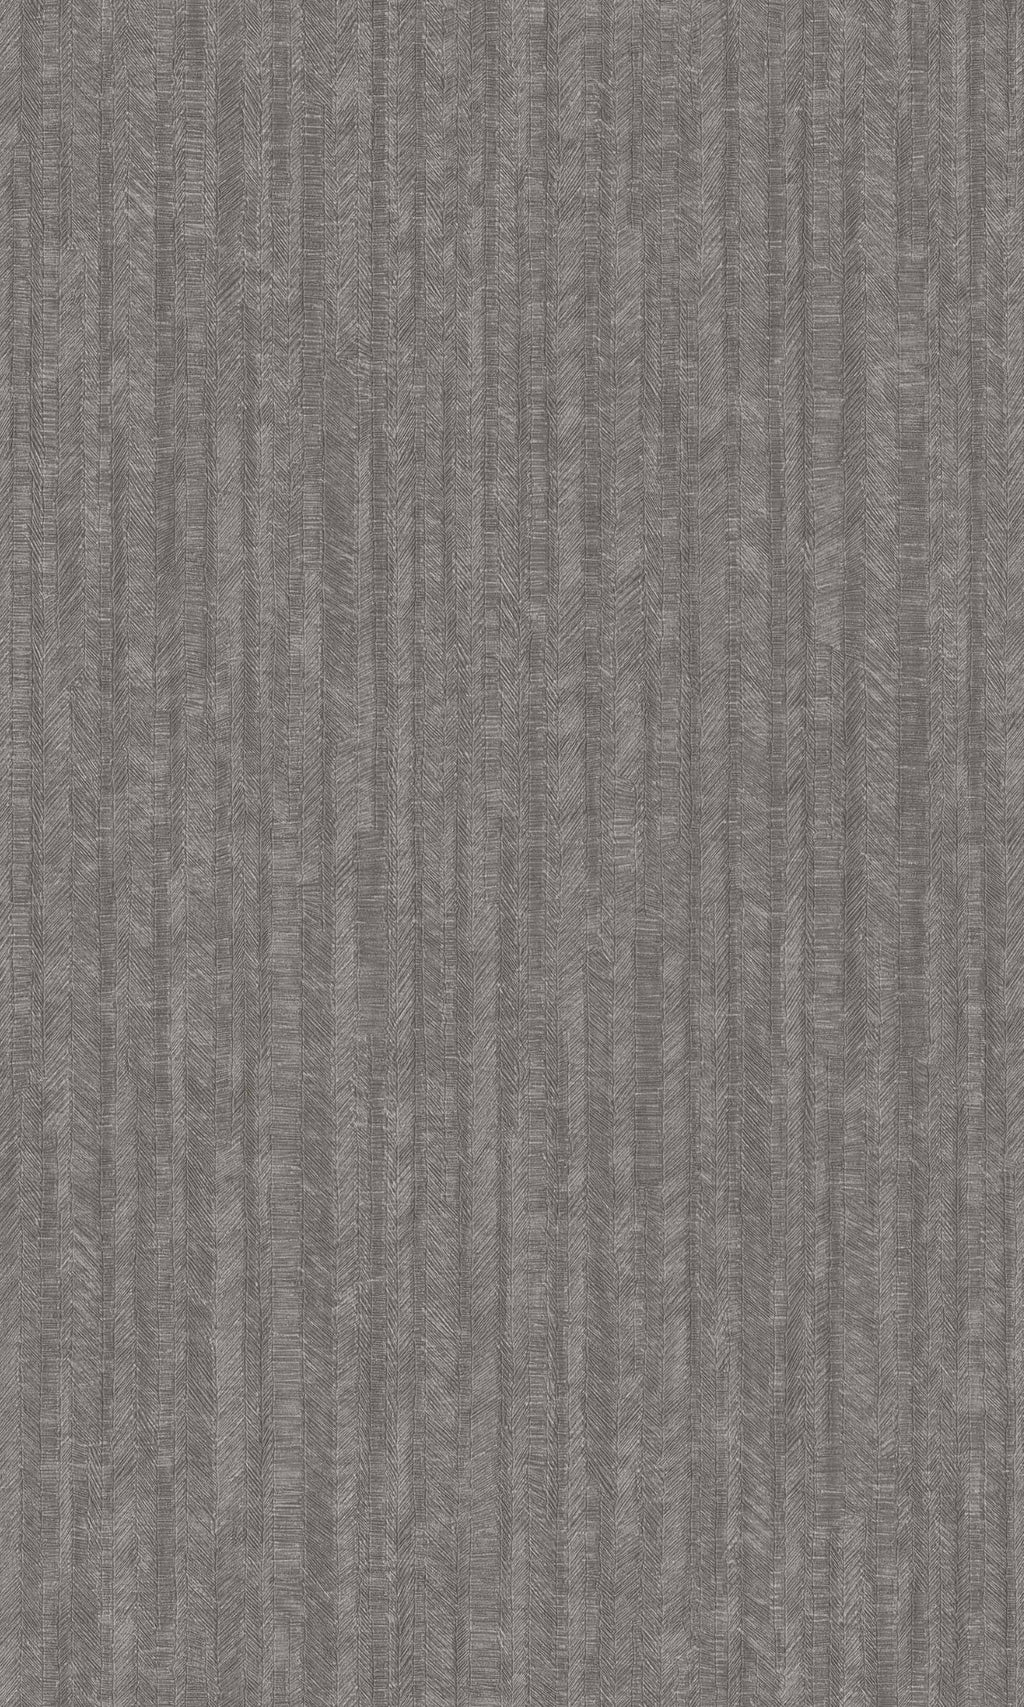 Grey Natural Herringbone Geometric Wallpaper R8597